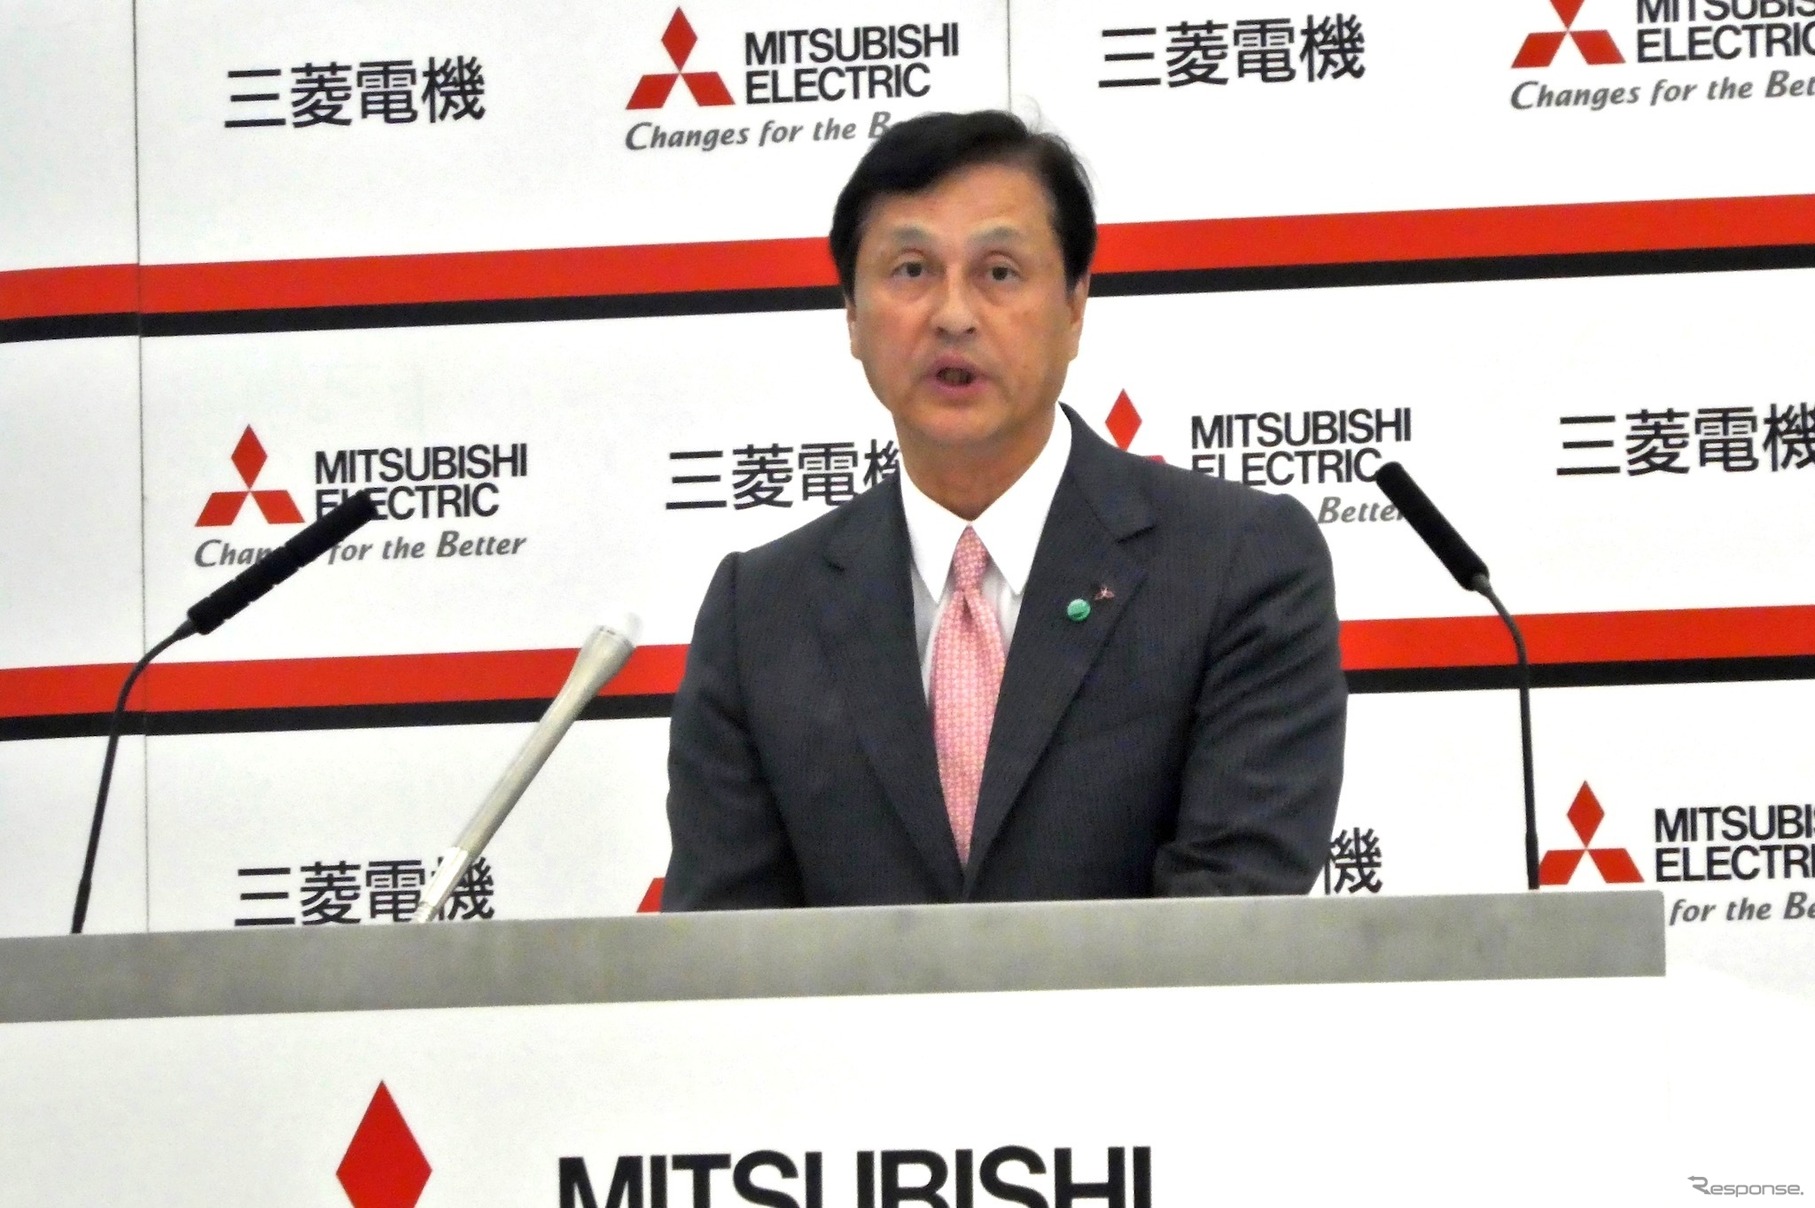 7月2日に辞任を表明した三菱電機の杉山武史社長（写真は2018年5月）。コンプレッサーに関する検査不正は6月28日に発覚したが、翌日の株主総会では情報不足を理由に報告が見送られ、6月30日に正式に広報された。当初、株主総会での未報告は執行役の判断を経て、6月28日に開かれた取締役会で了承を得た結果としていたが、後に取締役会が行なわれた事実はなく、各取締役へ事情を個別に説明した上で執行役が判断した結果であると訂正されている。